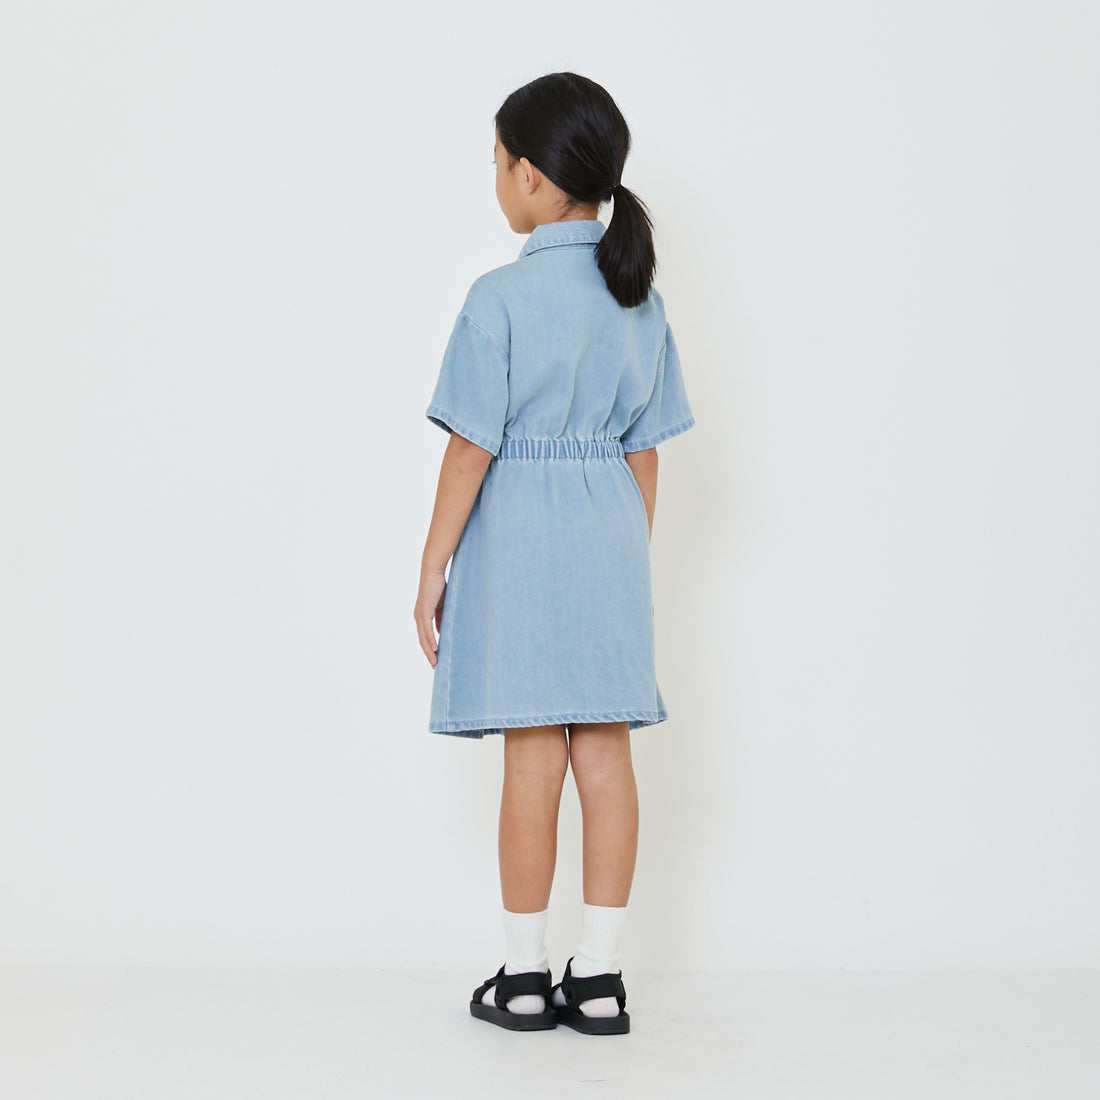 Girl Denim Dress - Light Blue - SG2402029A